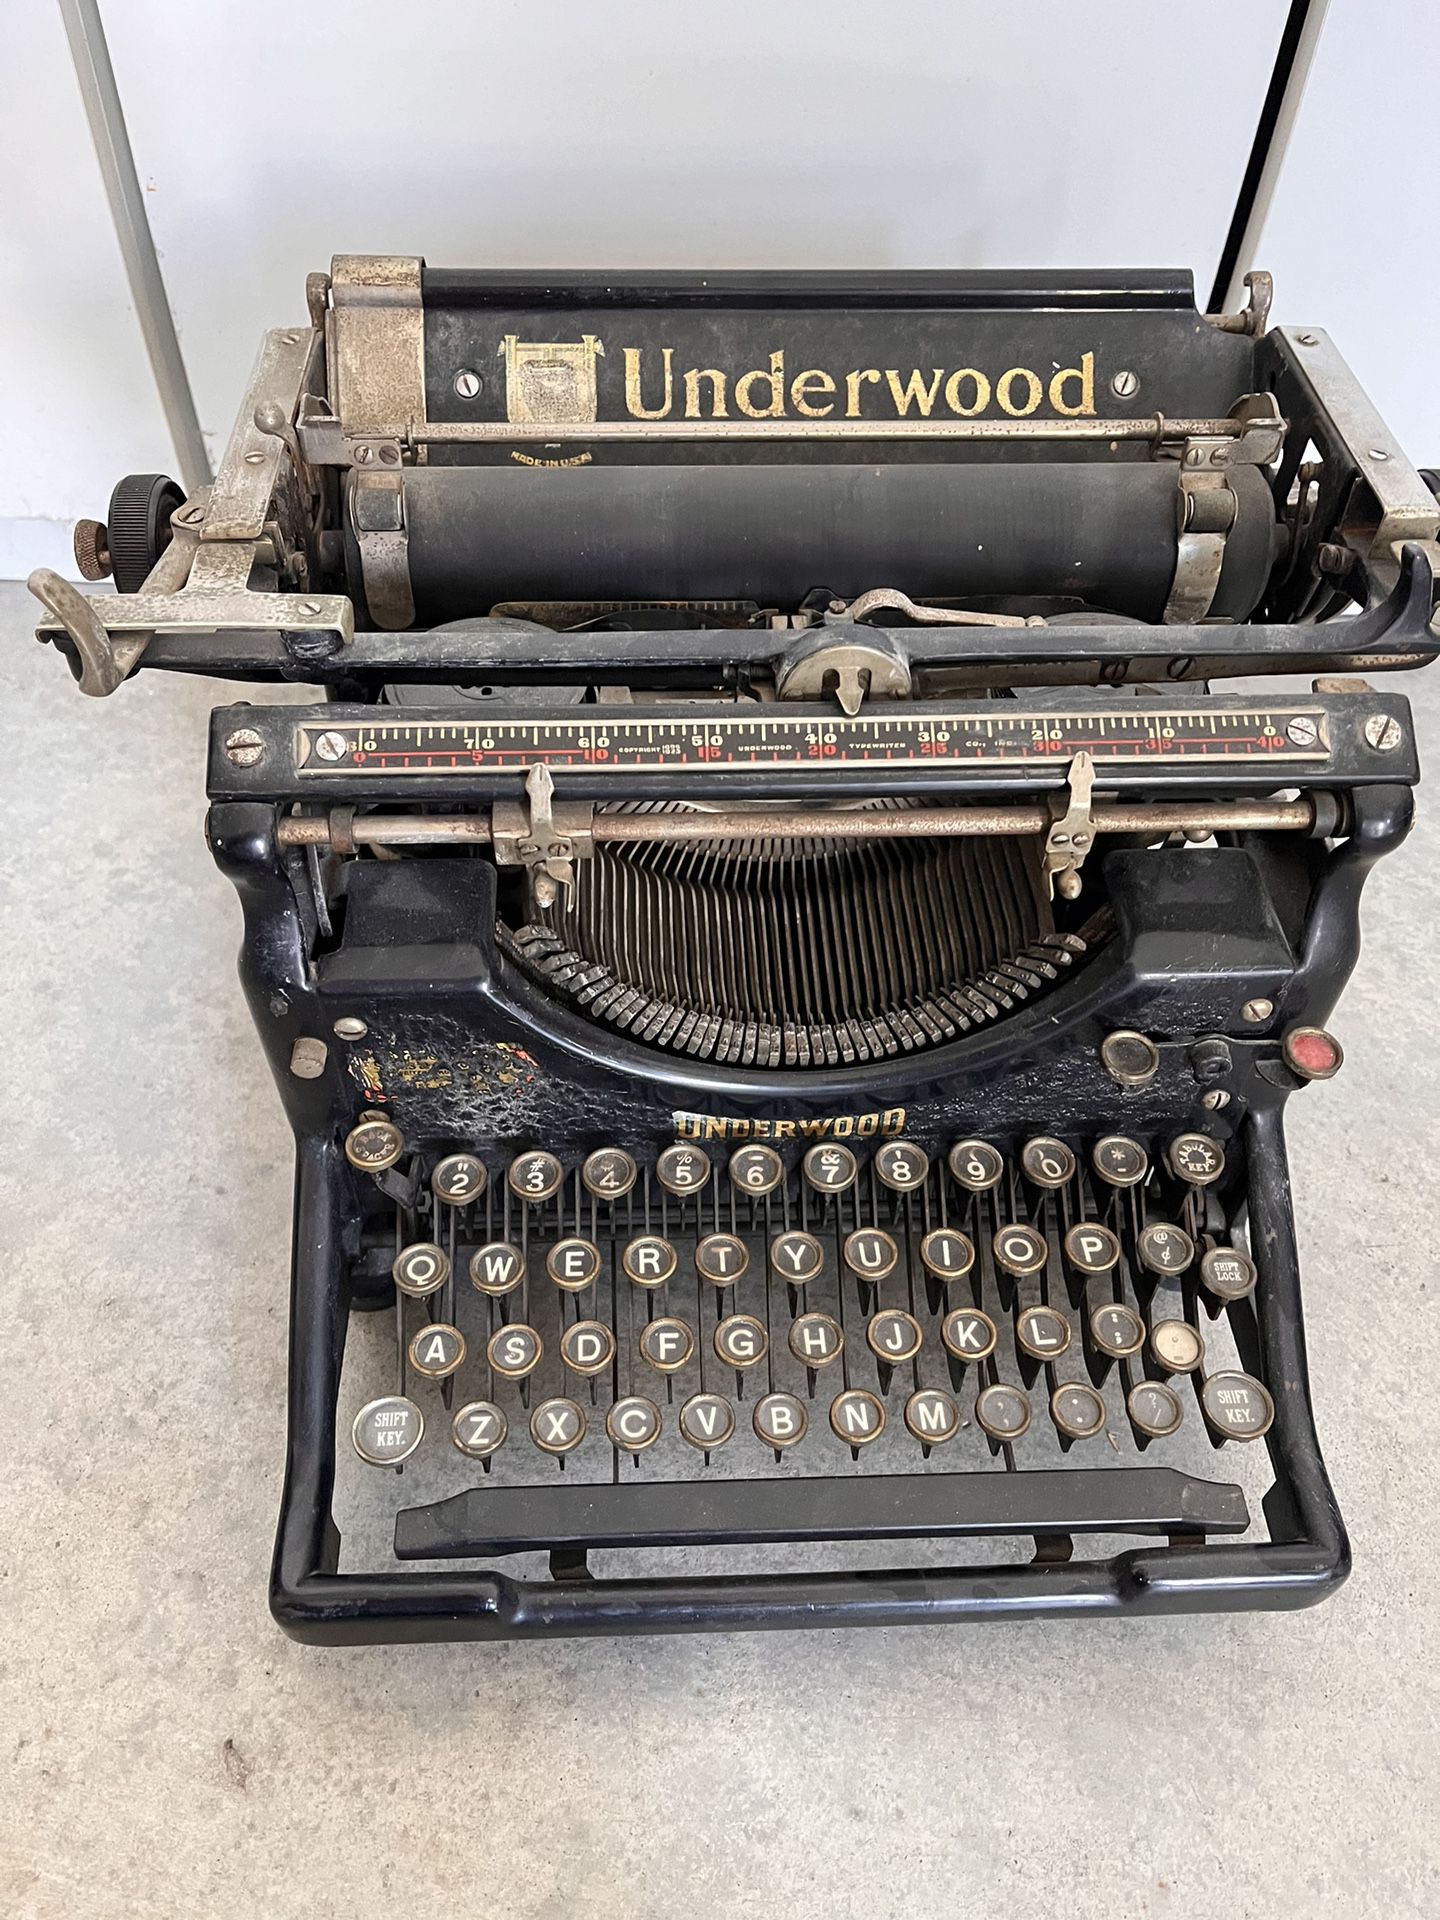 Underwood No 5 Antique Typewriter 